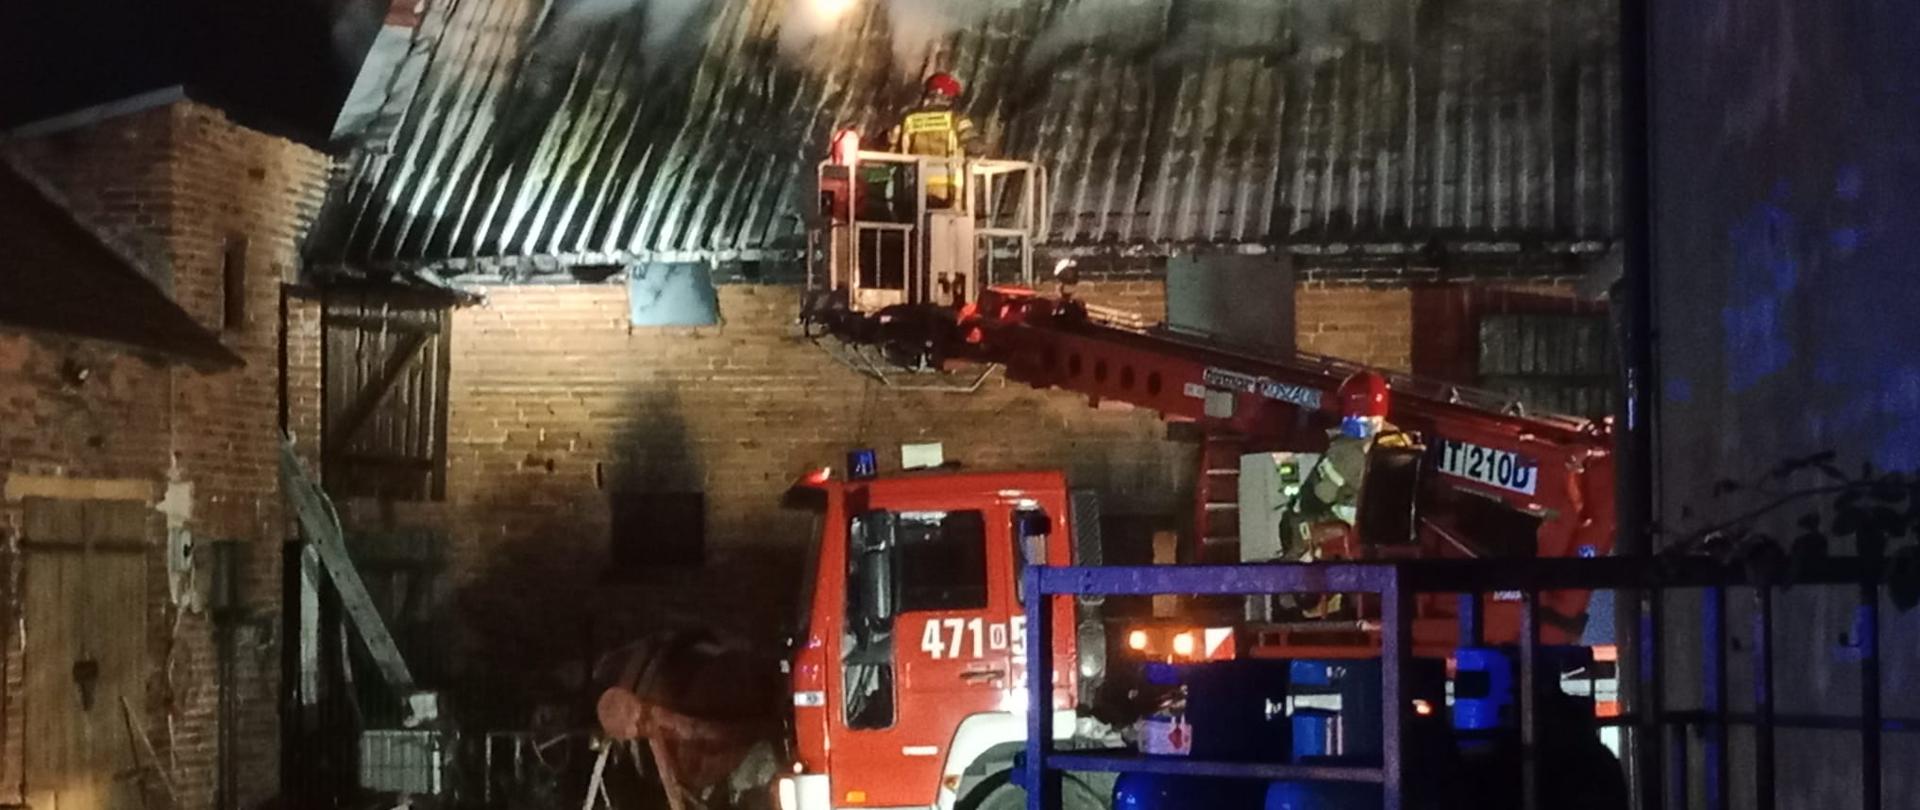 Pożar budynku gospodarczego, z dachu wydobywa się dym, przed budynkiem znajduje się strażacki podnośnik. W koszu podnośnika znajduje się strażak.